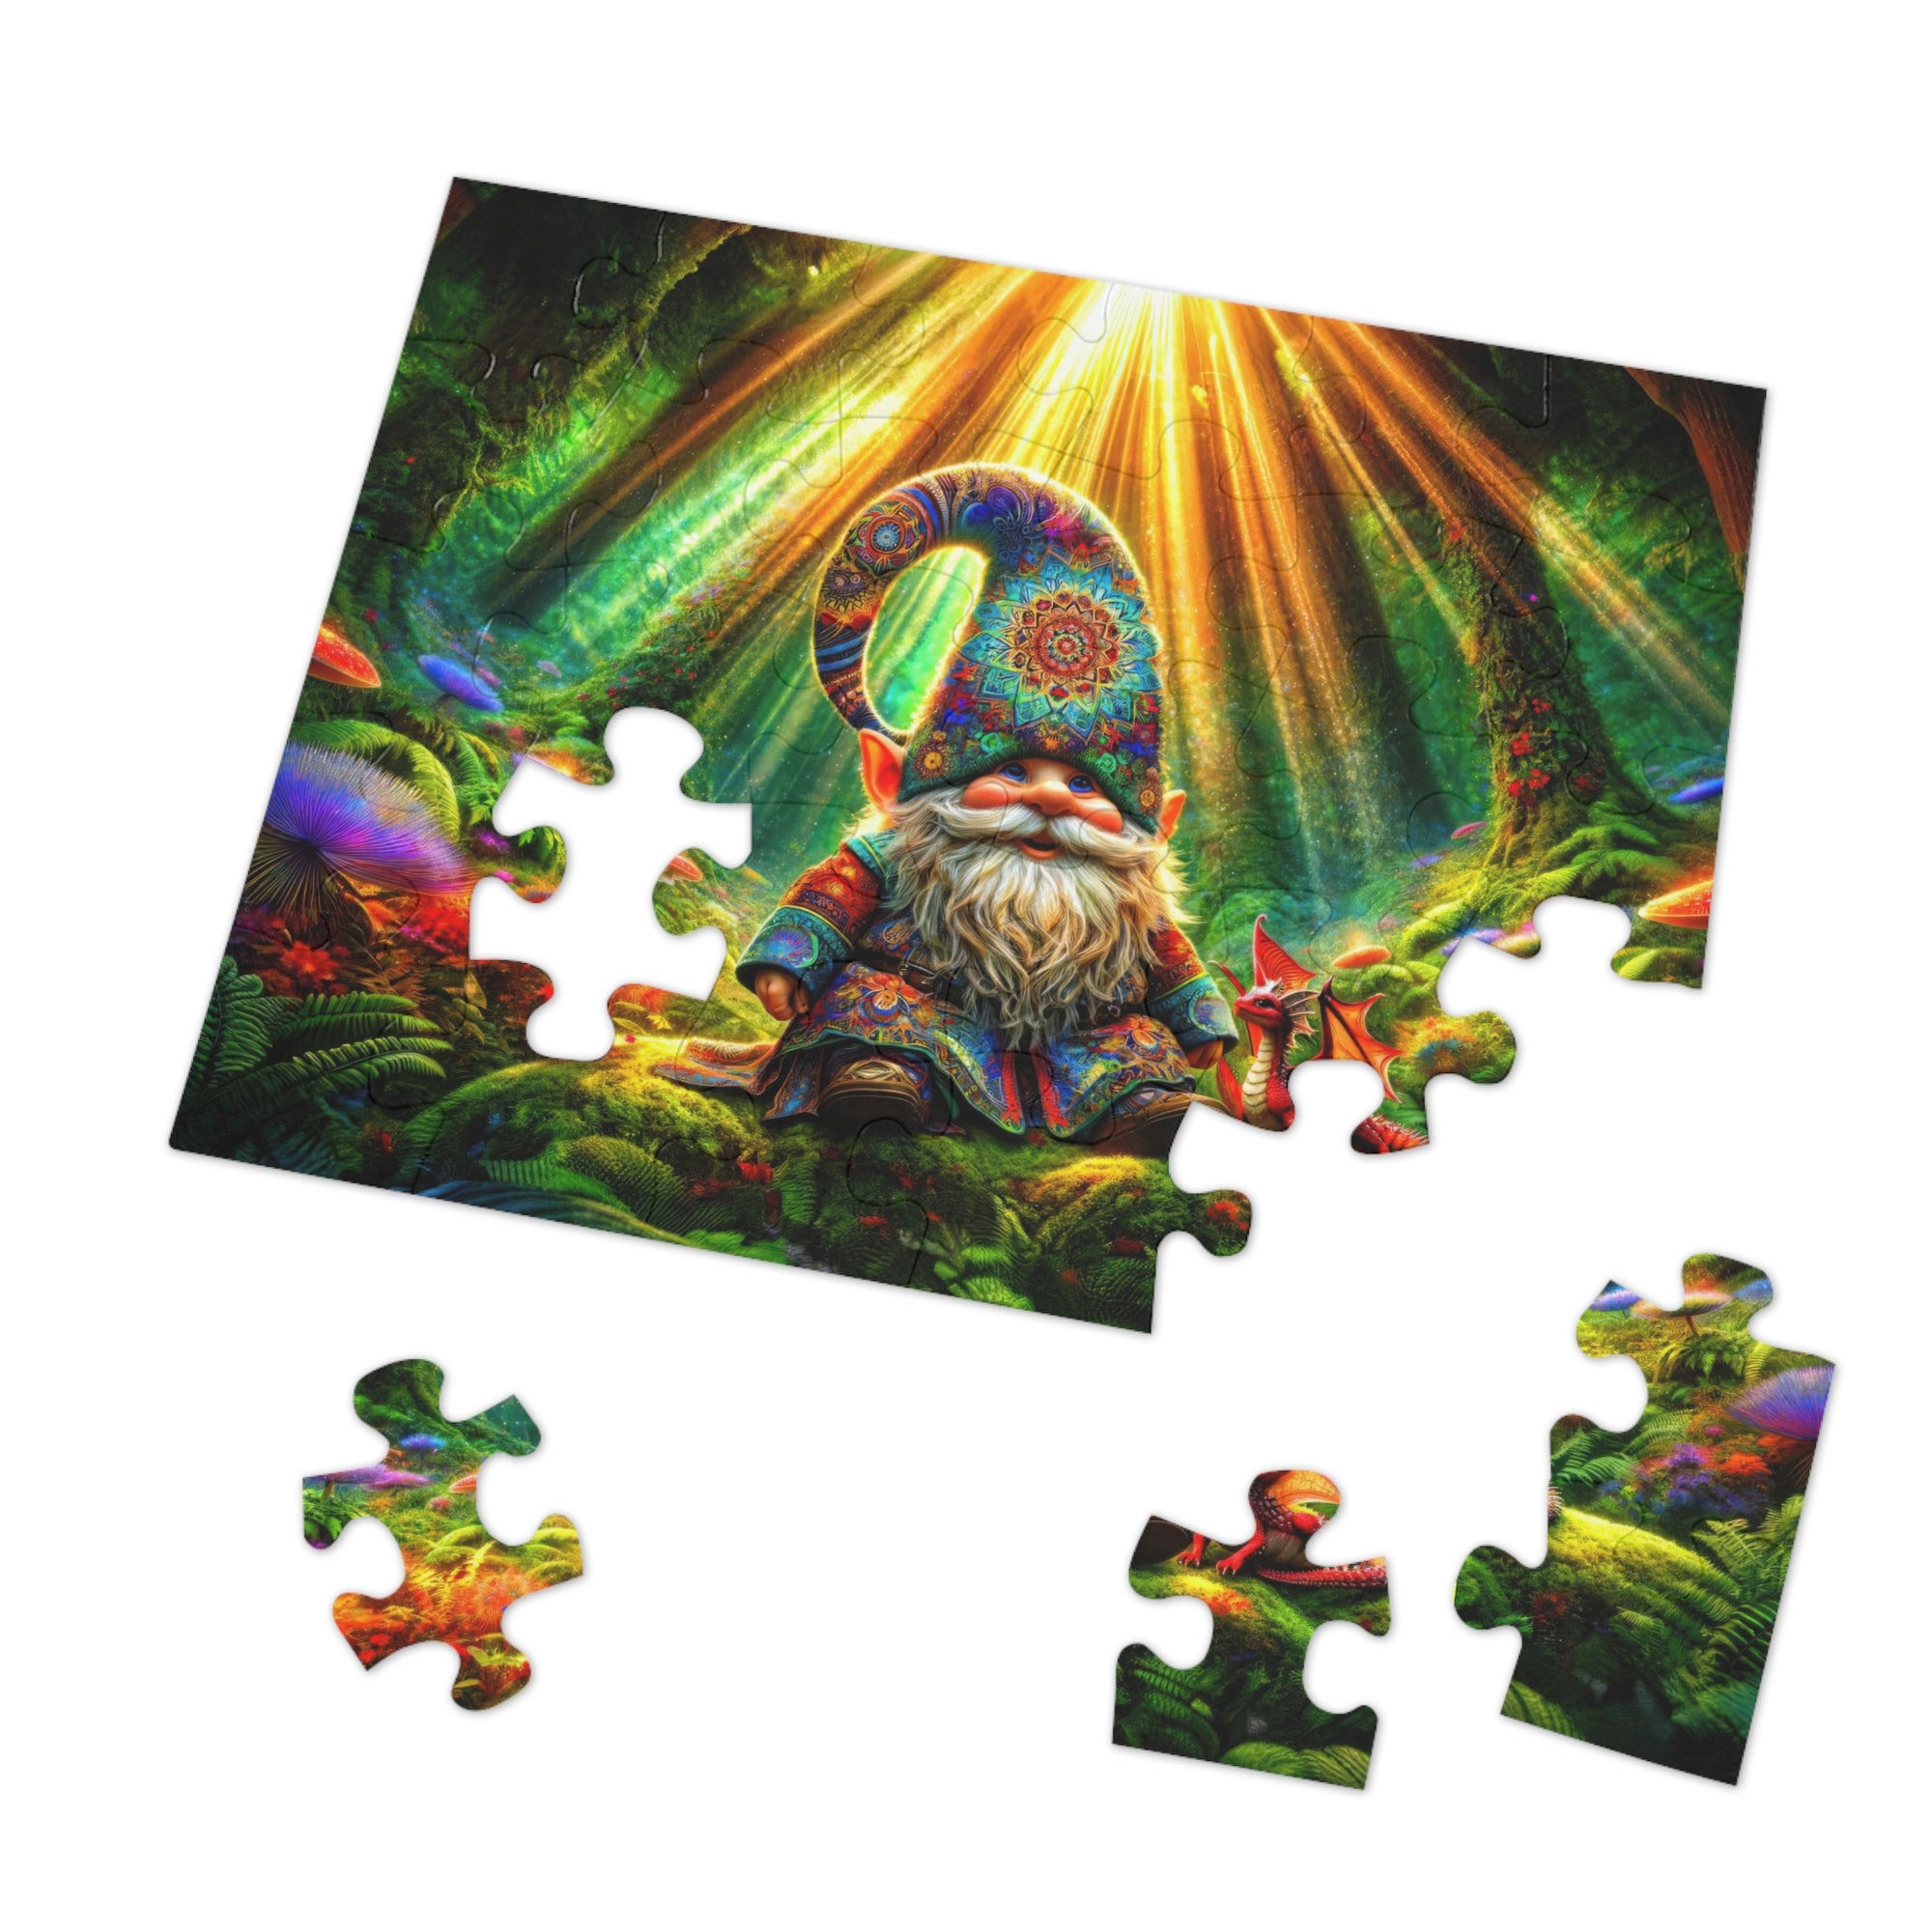 Mandalas and Mythos Jigsaw Puzzle